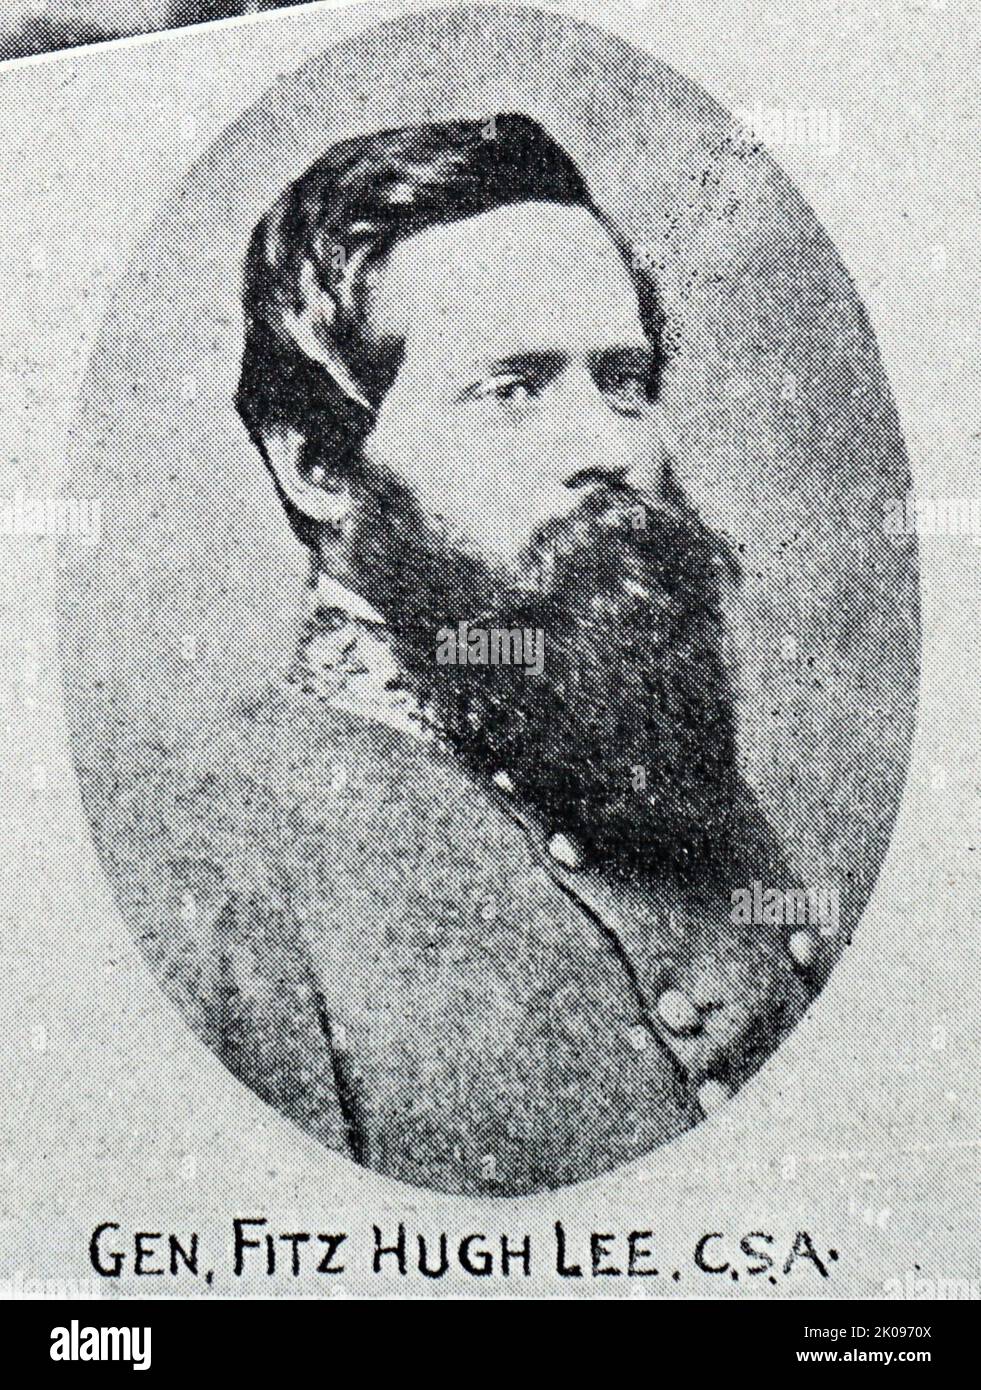 Fitzhugh Lee (19. November 1835 - 28. April 1905) war ein konföderierte Kavalleriegeneral im amerikanischen Bürgerkrieg, der Gouverneur von Virginia aus dem Jahr 40., Diplomat und General der US-Armee im Spanisch-Amerikanischen Krieg. Stockfoto